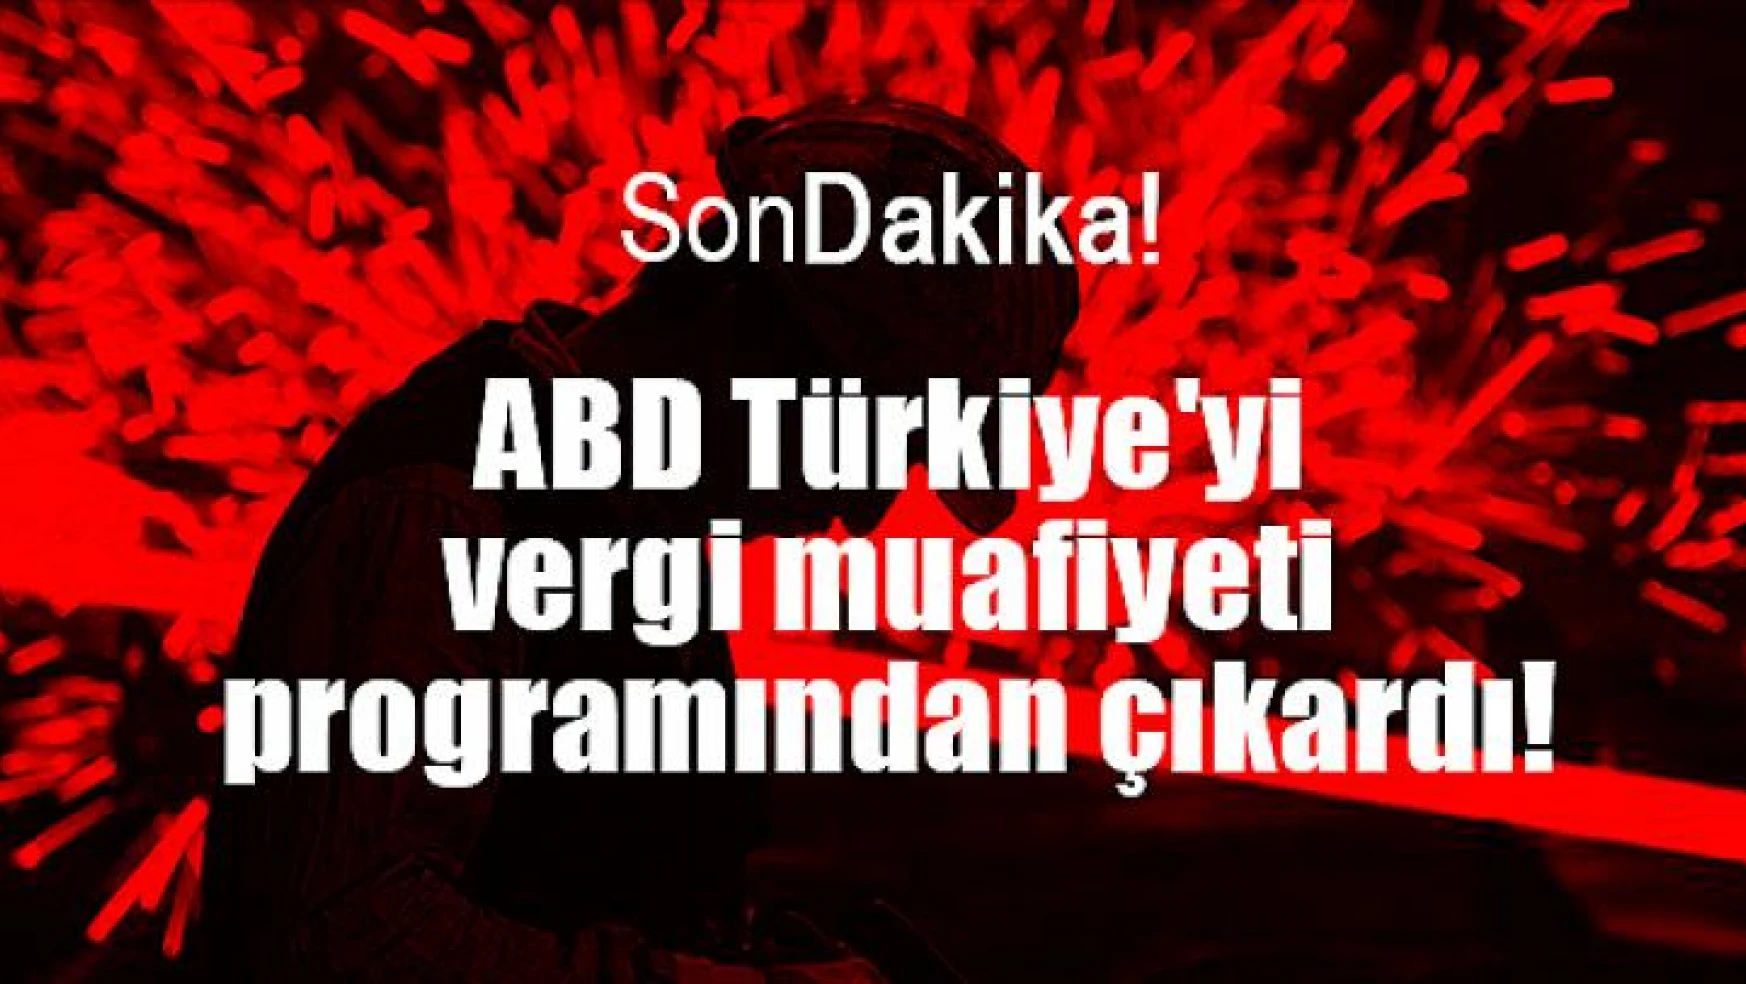 ABD Türkiye'yi vergi muafiyeti programından çıkardı!